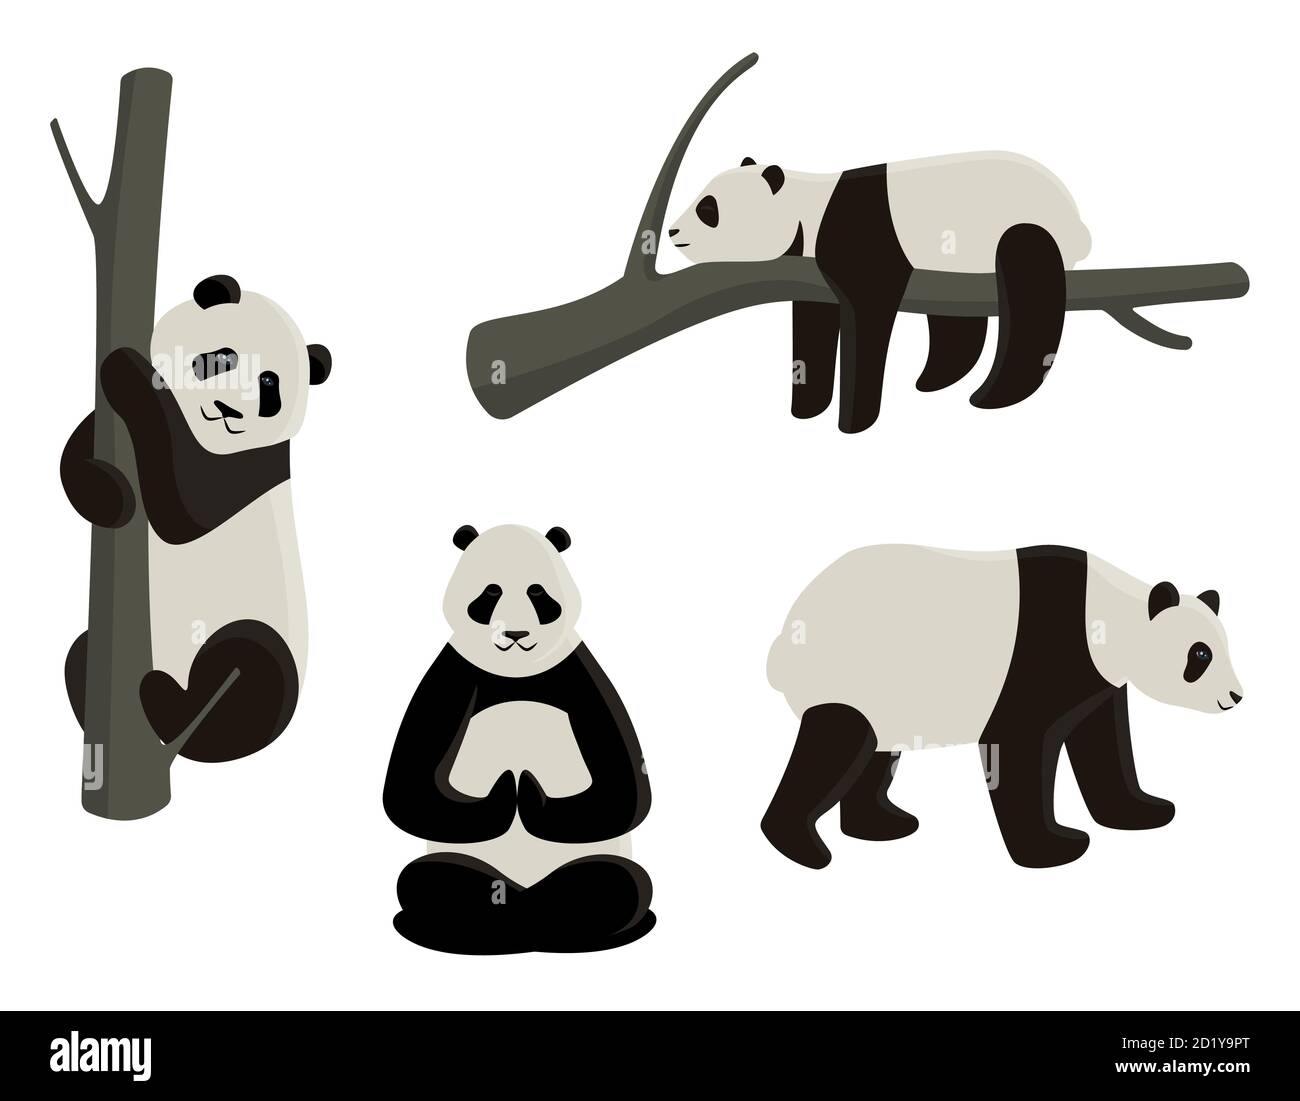 Vektor-Set von Pandas in verschiedenen Posen. Cartoon-Stil Illustrationen auf weißem Hintergrund isoliert. Stock Vektor